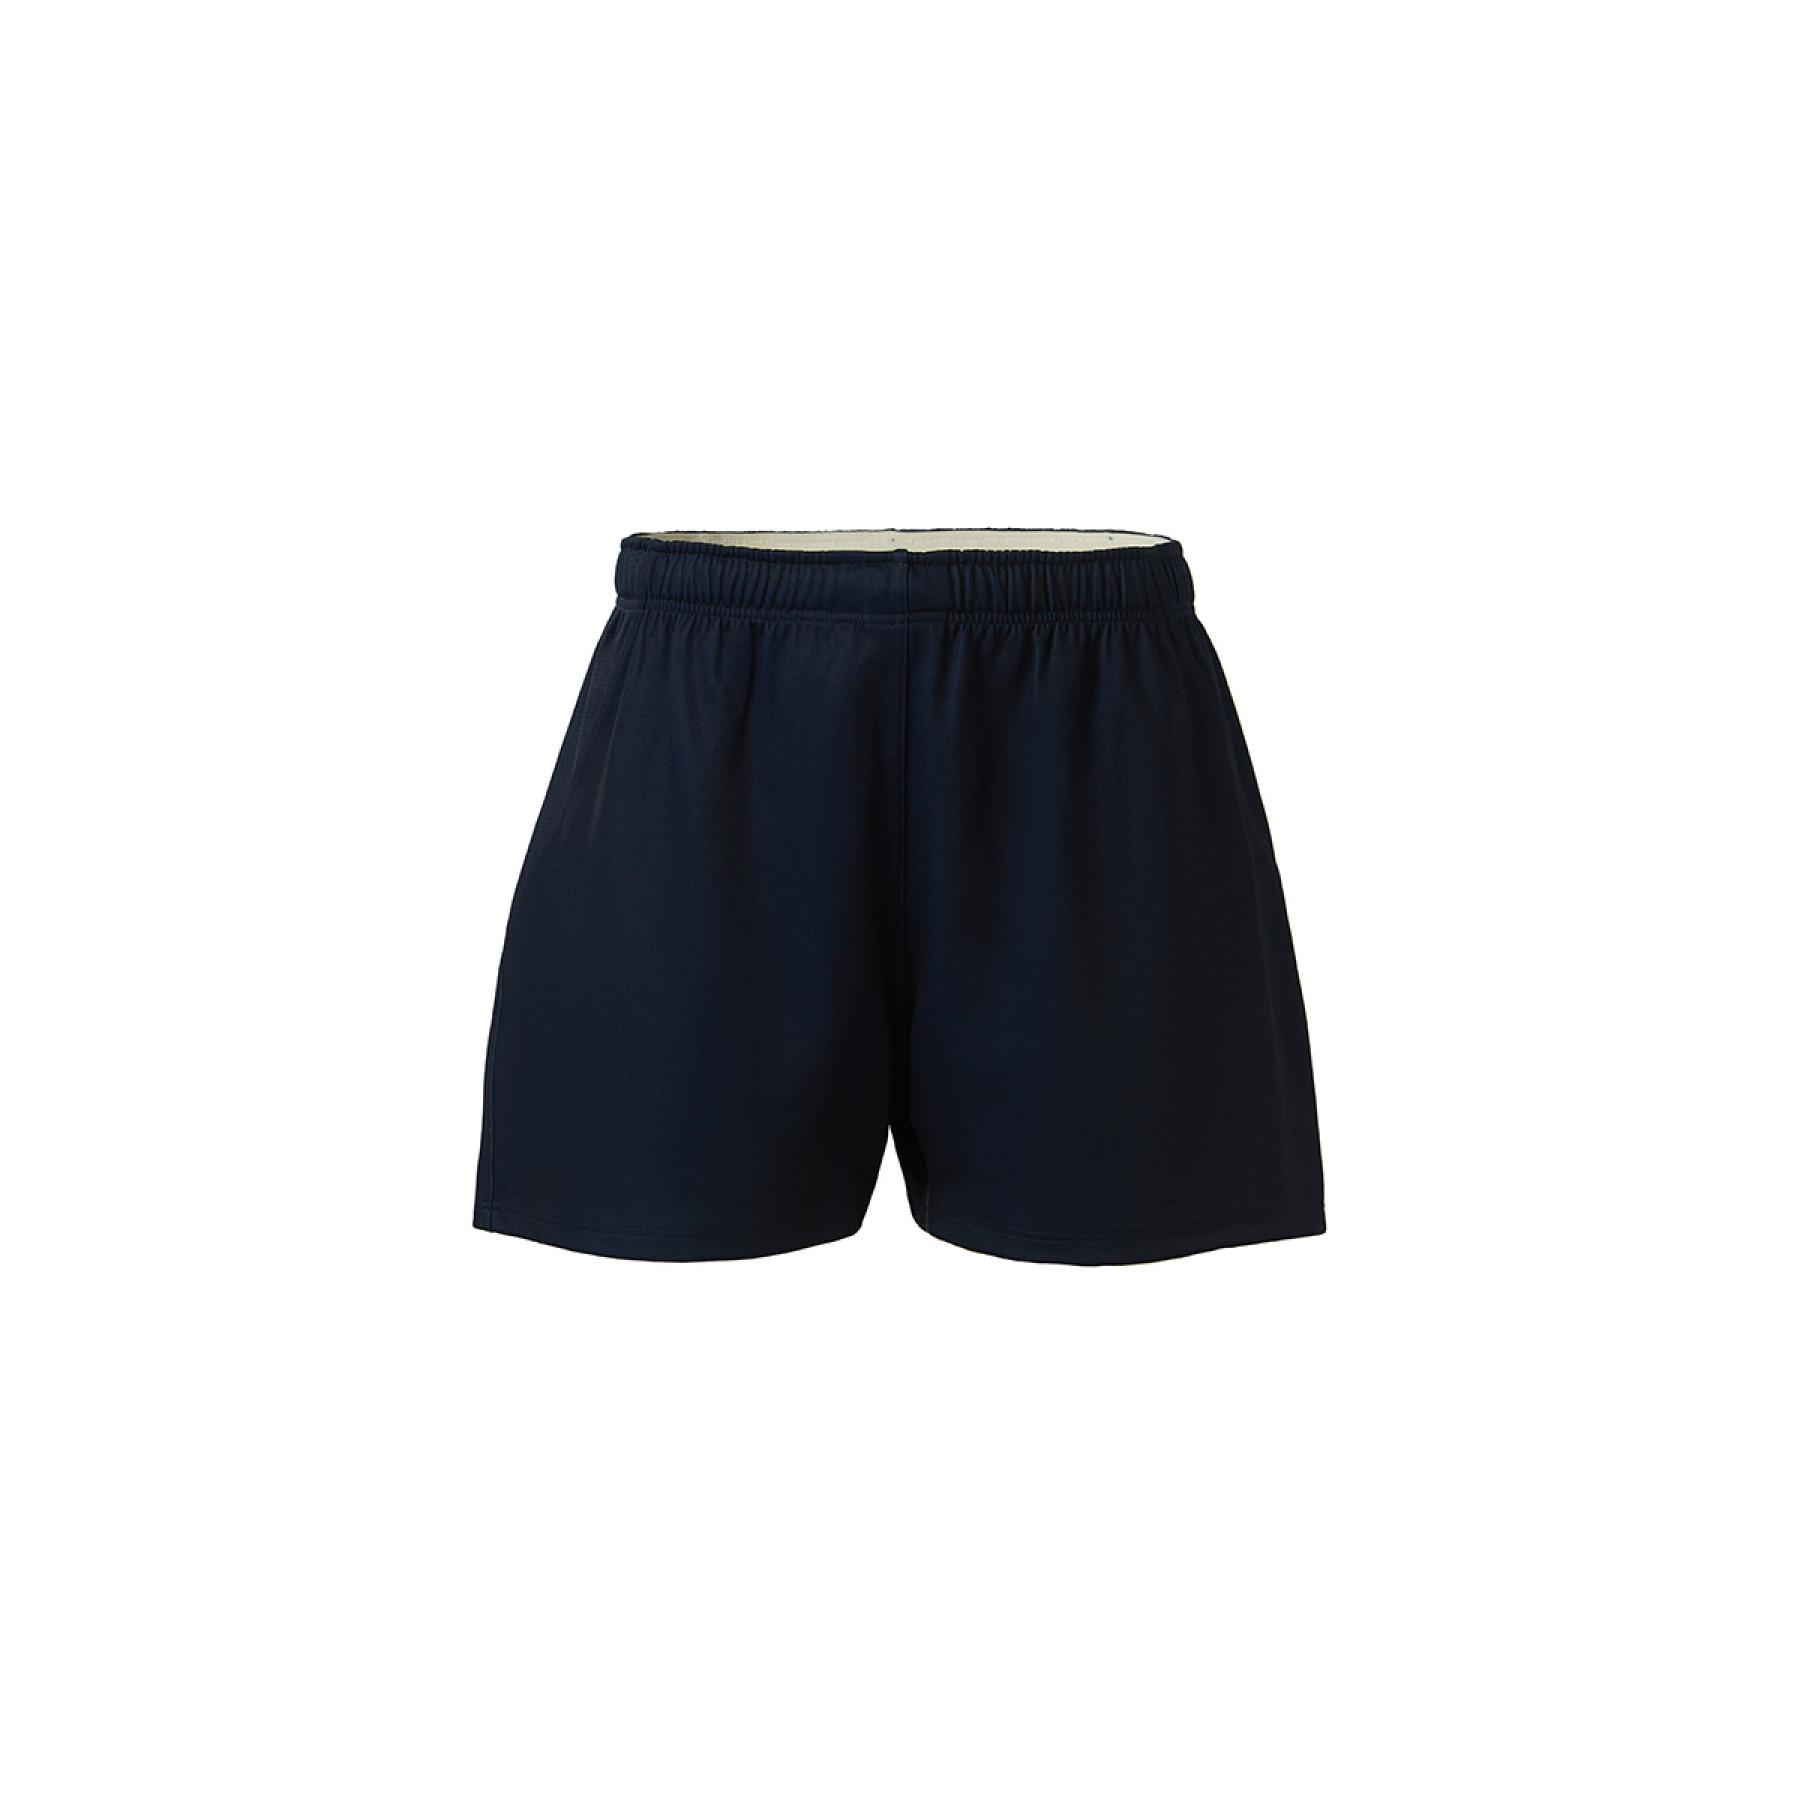 Authentic outdoor shorts Union Bordeaux-Bègles 2020/21